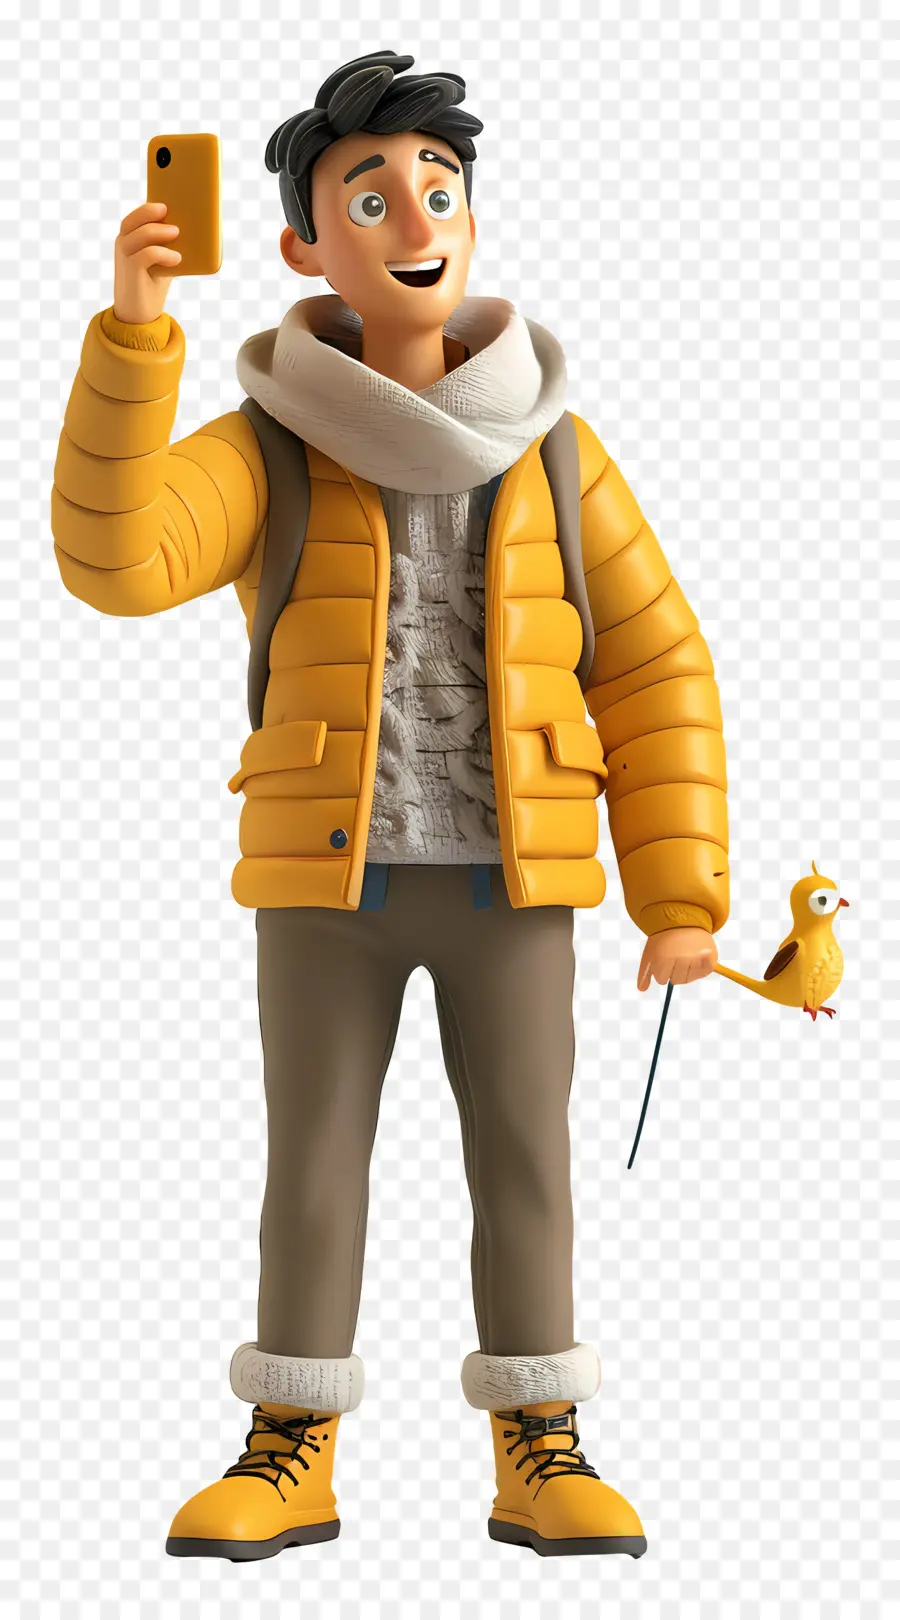 Mann, der Selfie modische Streetstyle Yellow Jacket Handy nimmt - Keine rechte Hand im Bild sichtbar